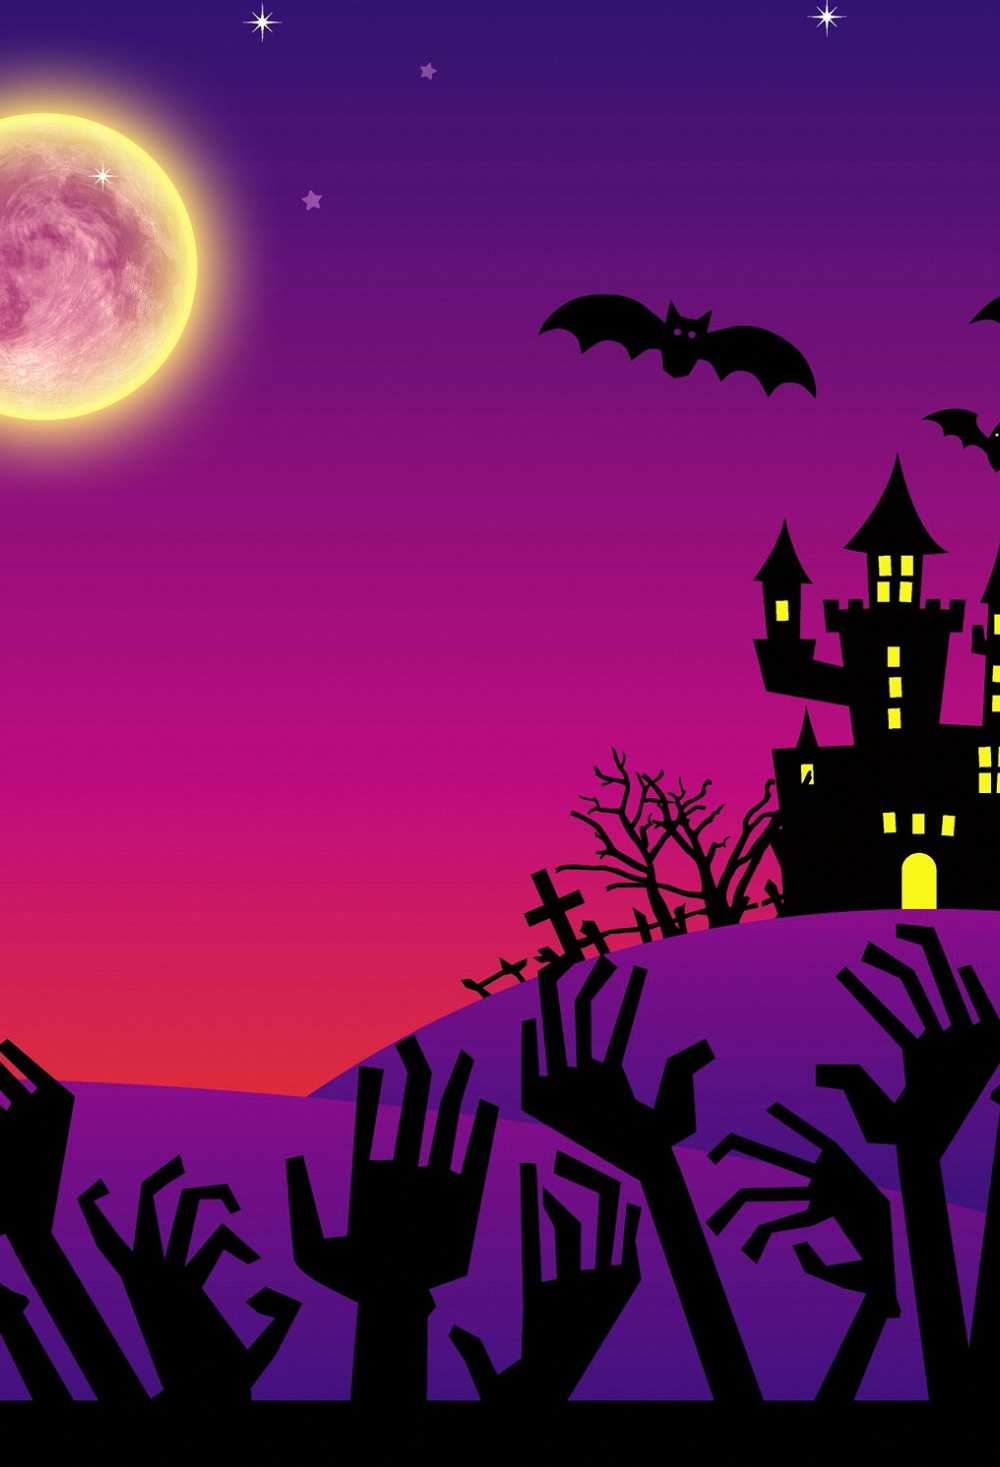 Not Spooky Halloween Castle Shadow Full Moon Backdrop IBD-246886 size:1.5x2.2